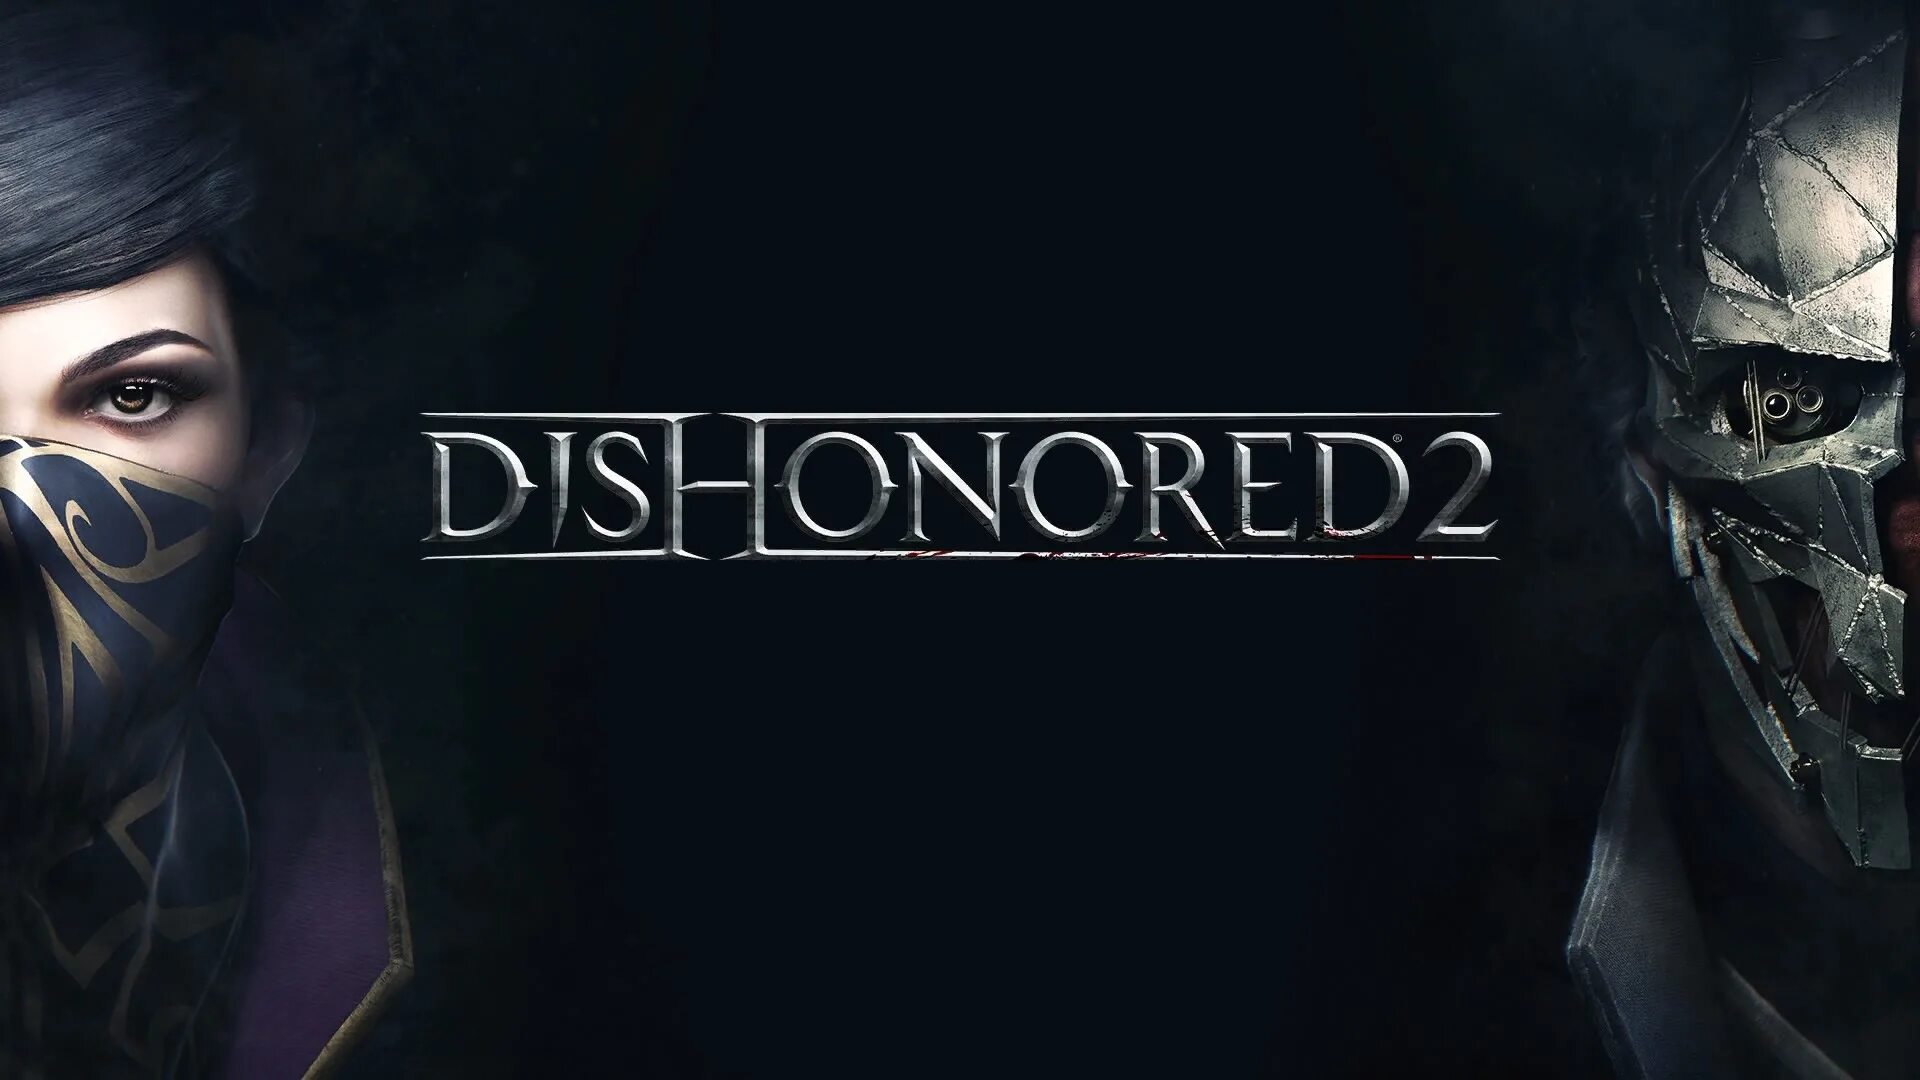 Dishonored 2 / ПРОХОЖДЕНИЕ, ЧАСТЬ 6 / ОСМОТР ДОМОВ И ДОПОЛНИТЕЛЬНЫЕ ЗАДАНИЯ!